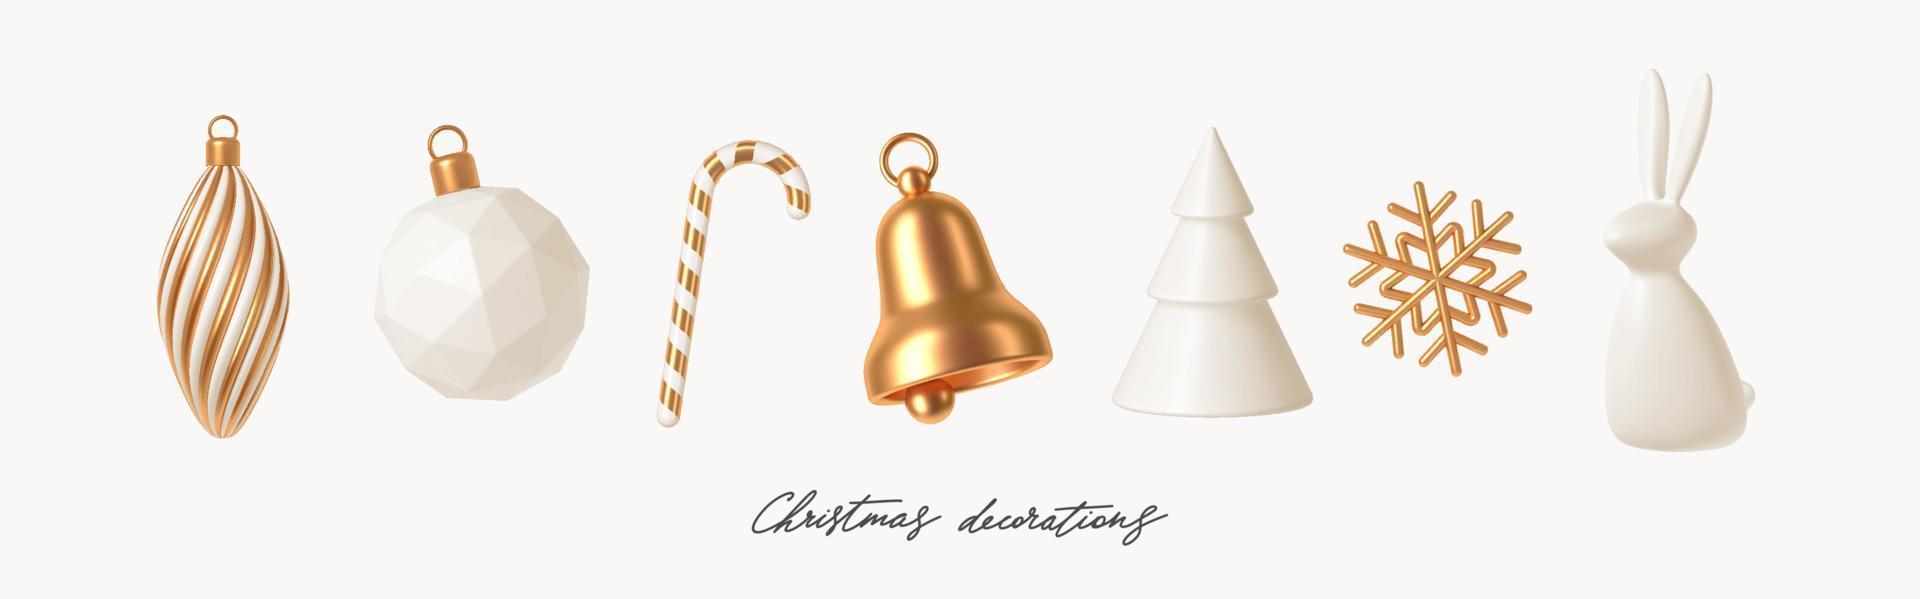 conjunto de decoraciones navideñas realistas blancas y doradas. ilustración vectorial de procesamiento 3d. elementos de diseño para tarjeta de felicitación o invitación. vector